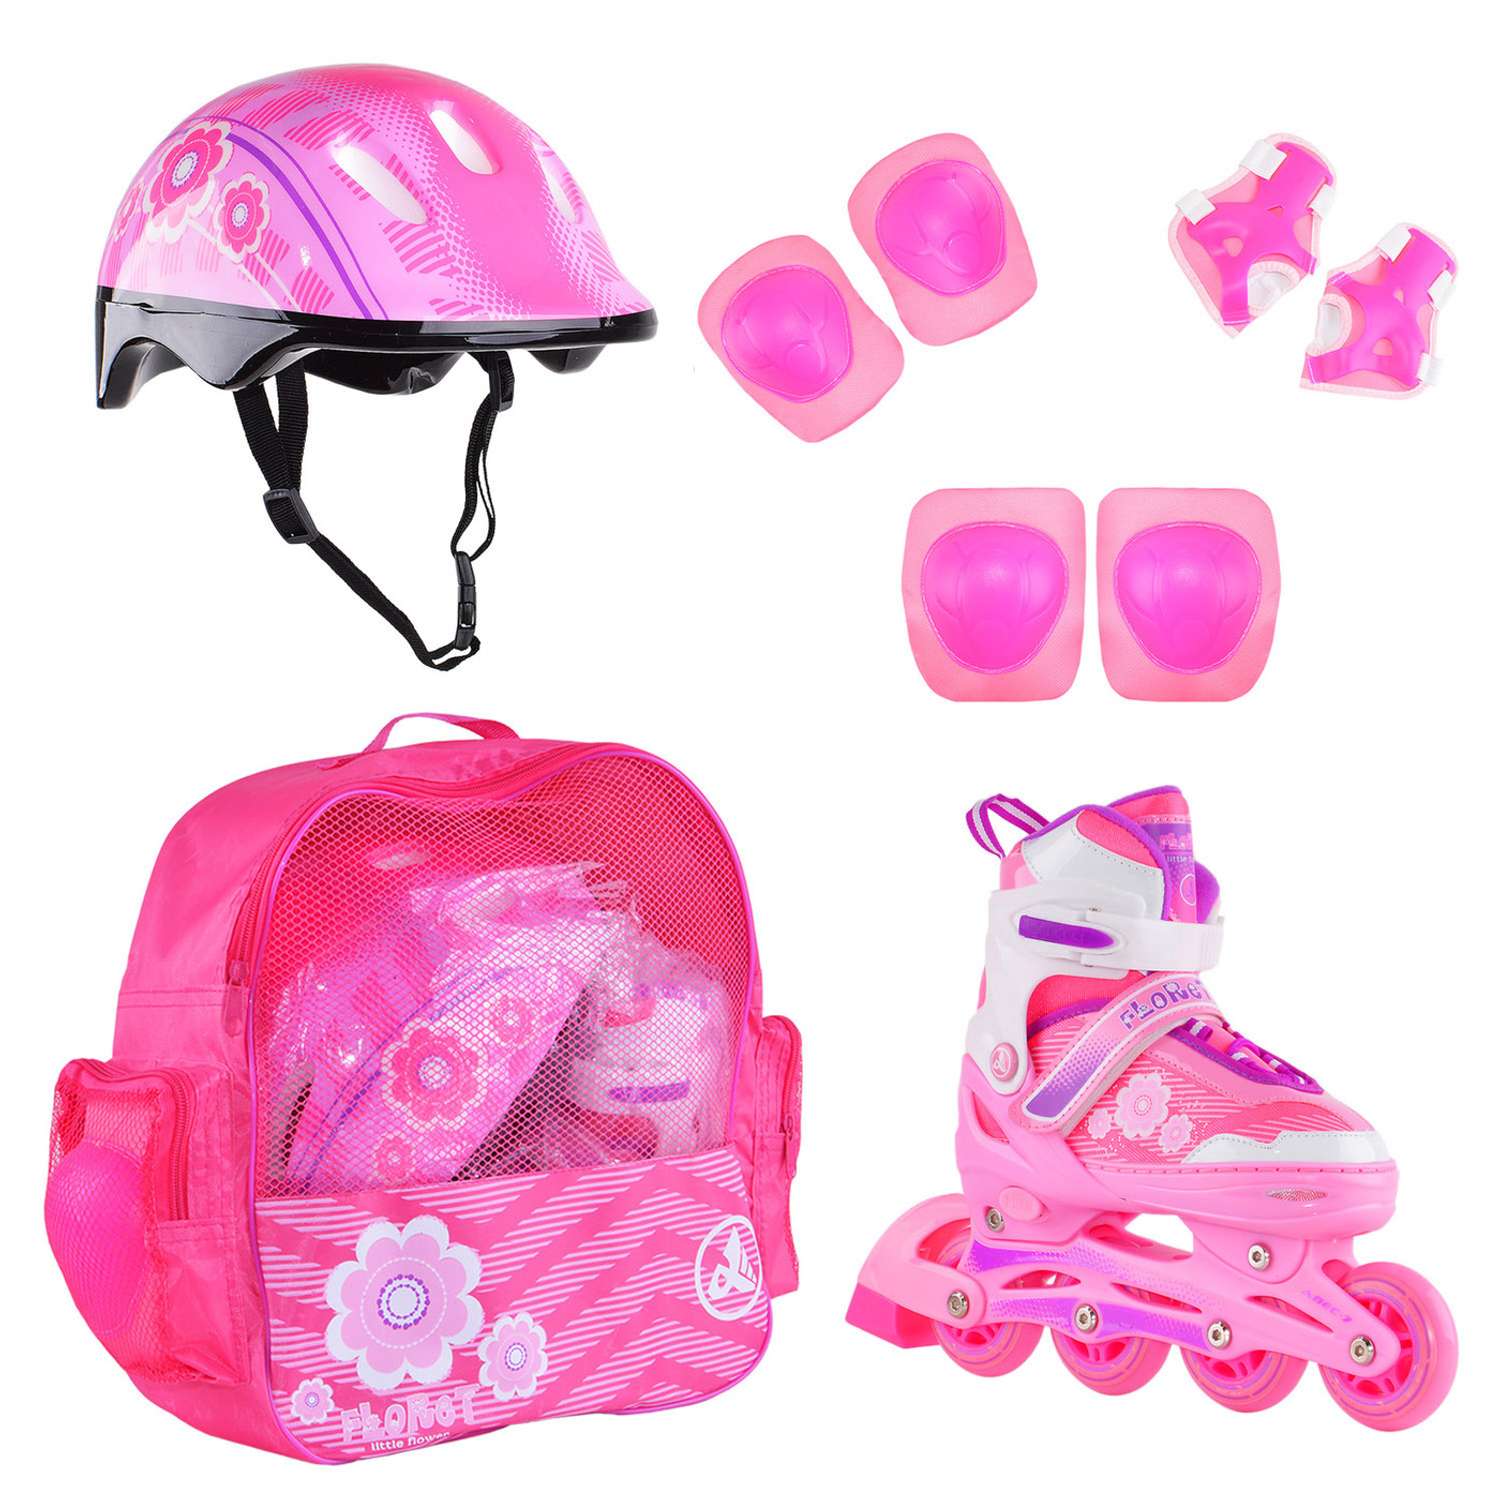 Набор роликовые коньки Alpha Caprice раздвижные Floret White Pink Violet шлем и набор защиты в сумке размер S 31-34 - фото 1